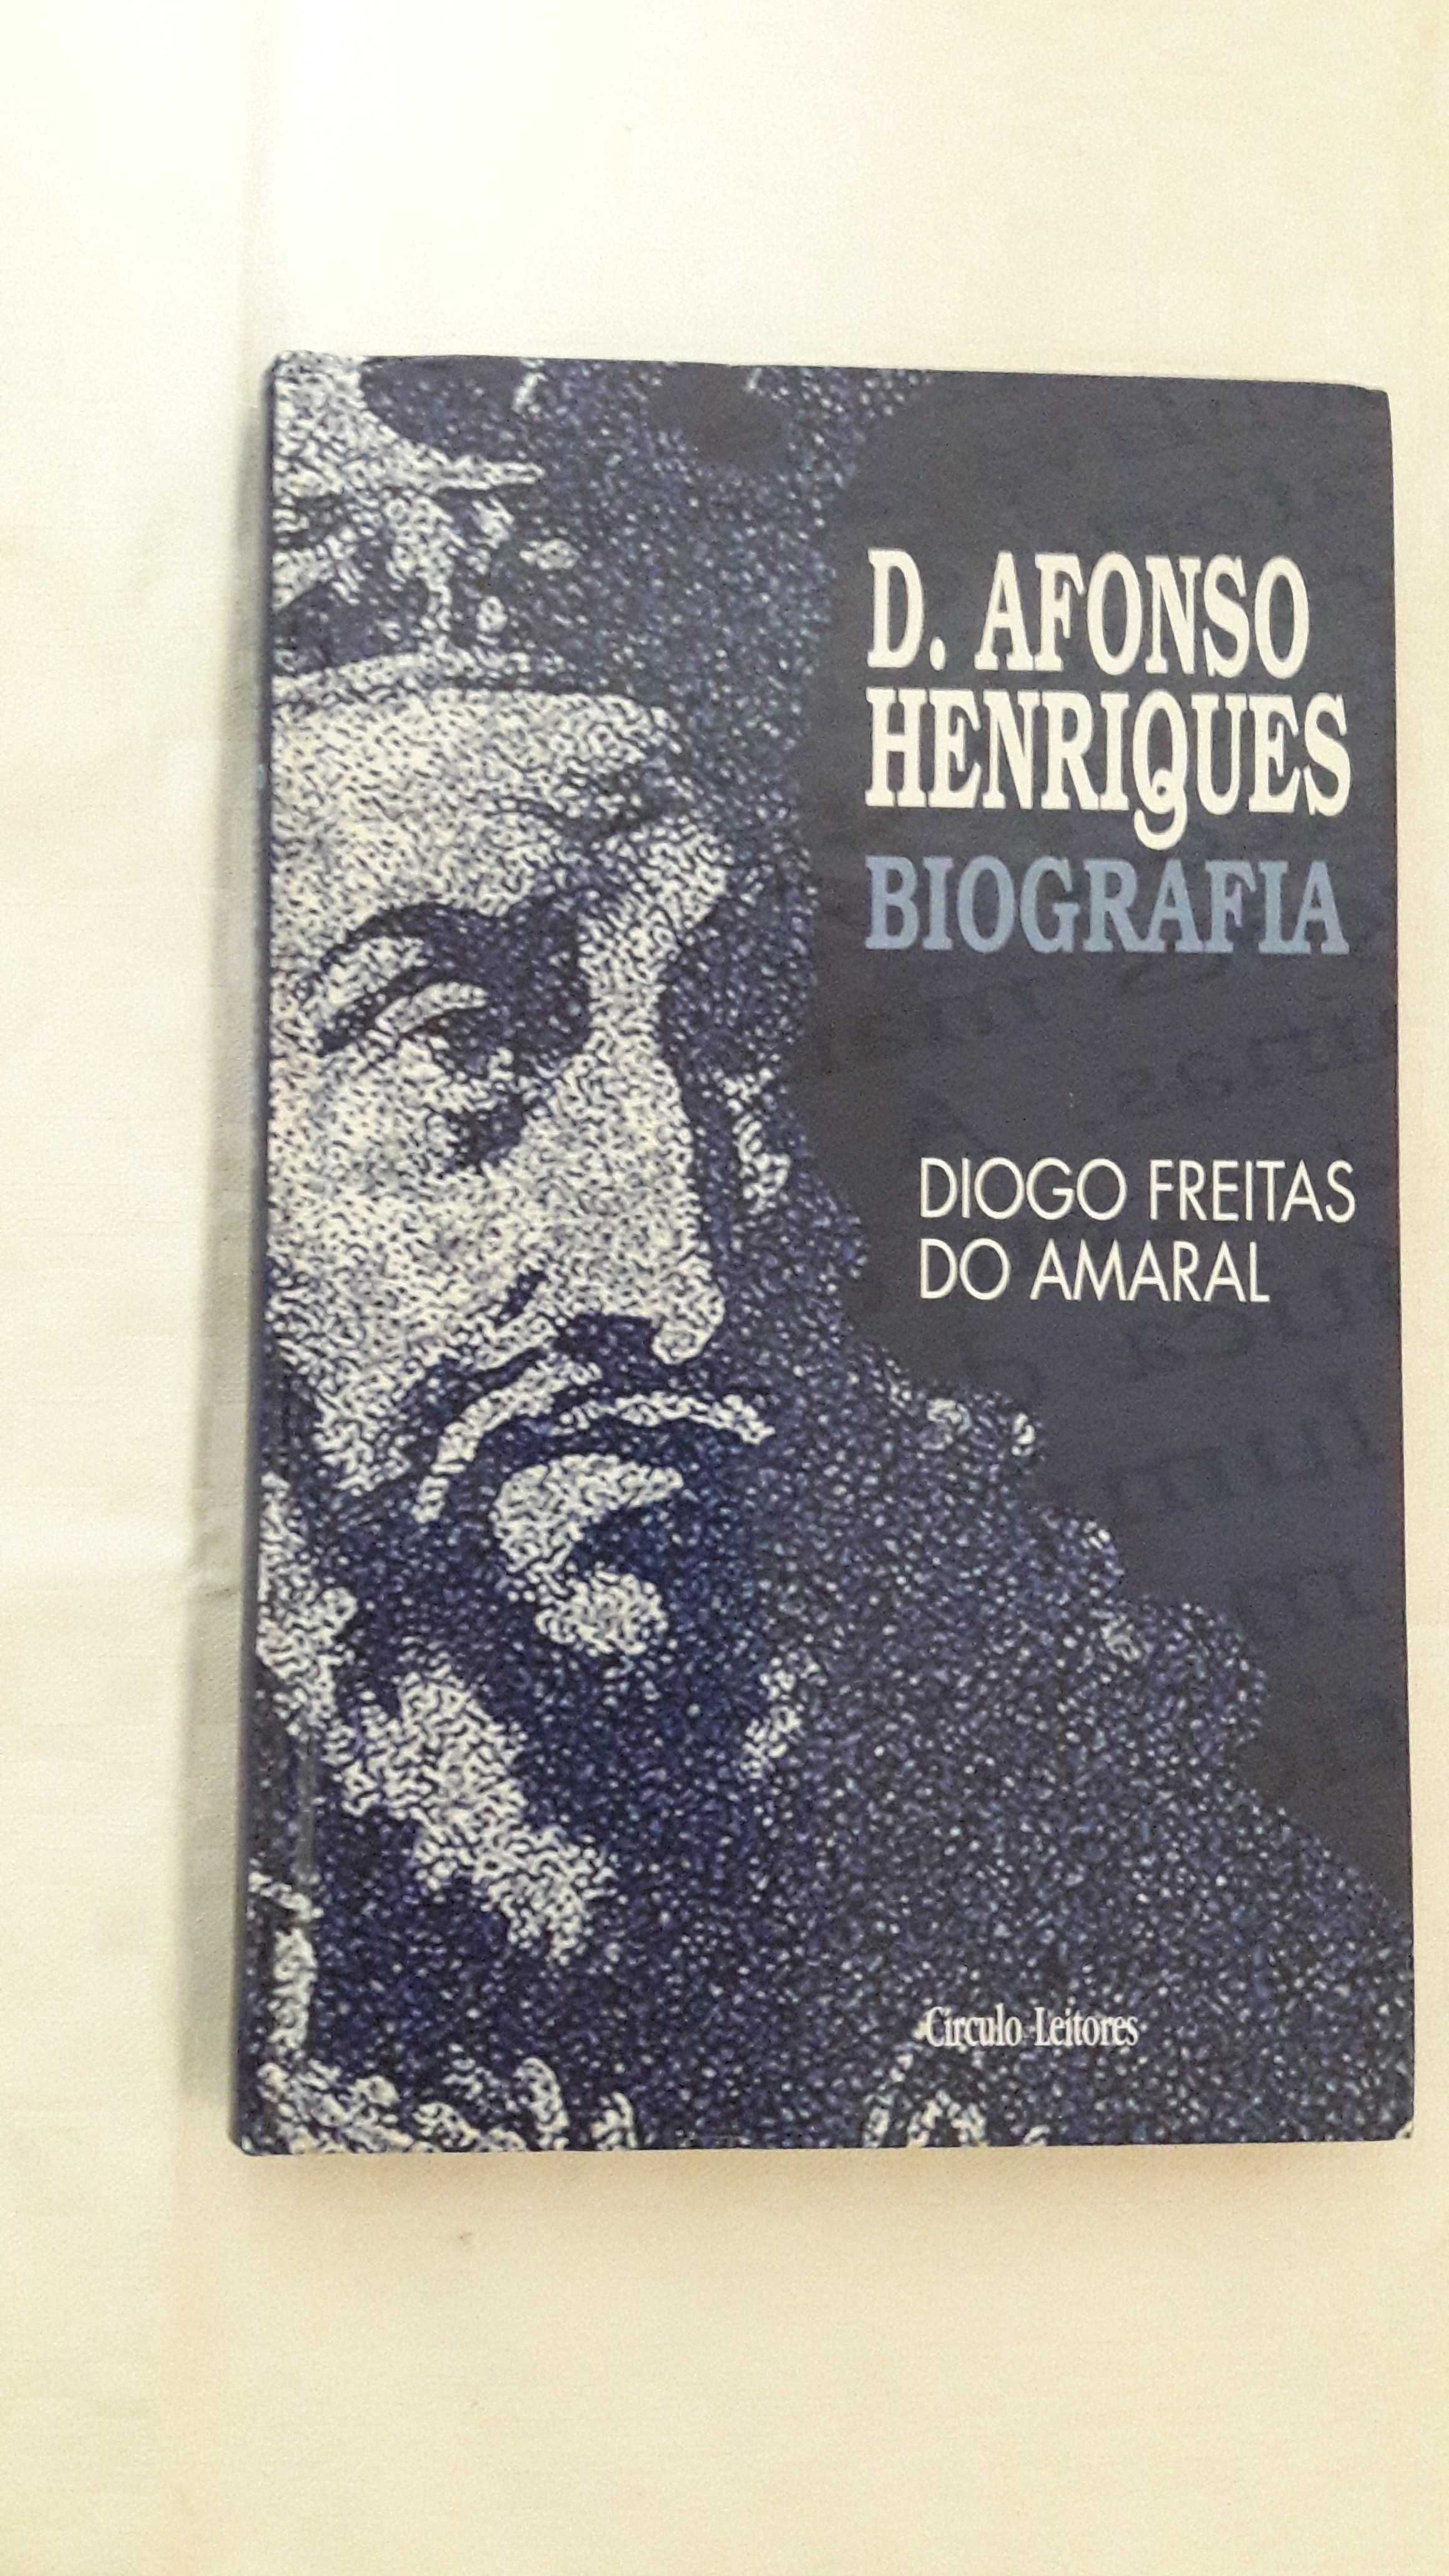 D. Afonso Henriques Biografia / Diogo Freitas do Amaral